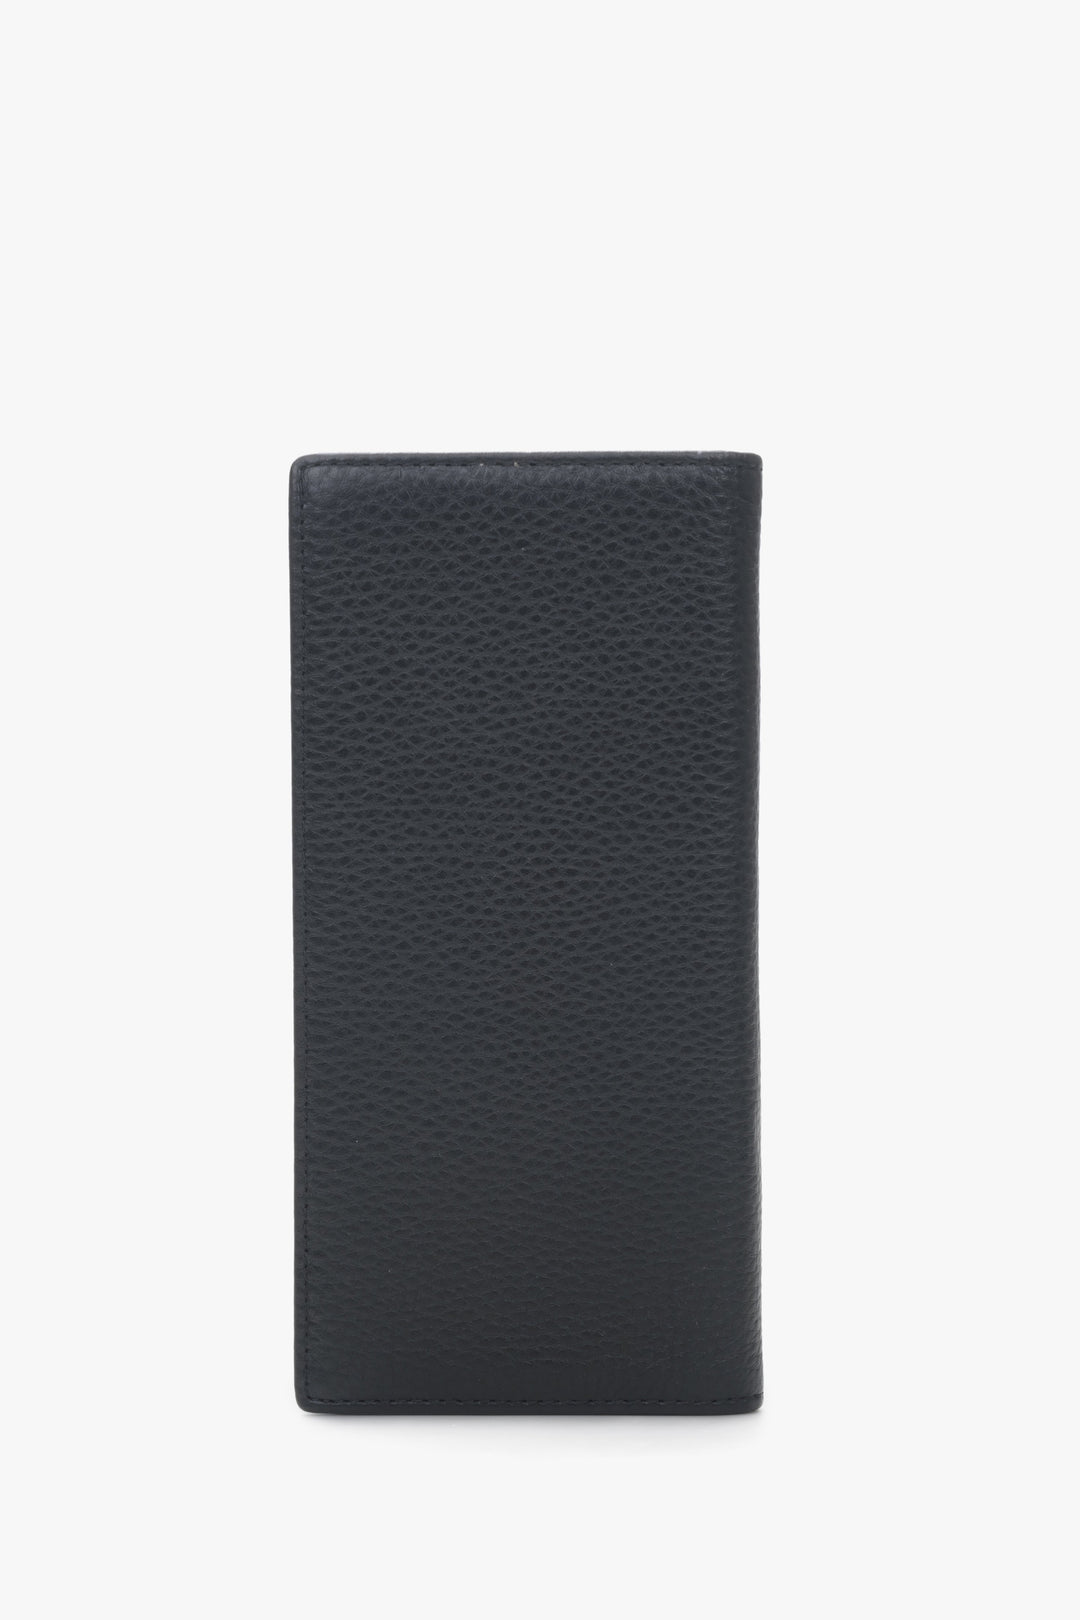 Large format men's  black wallet.